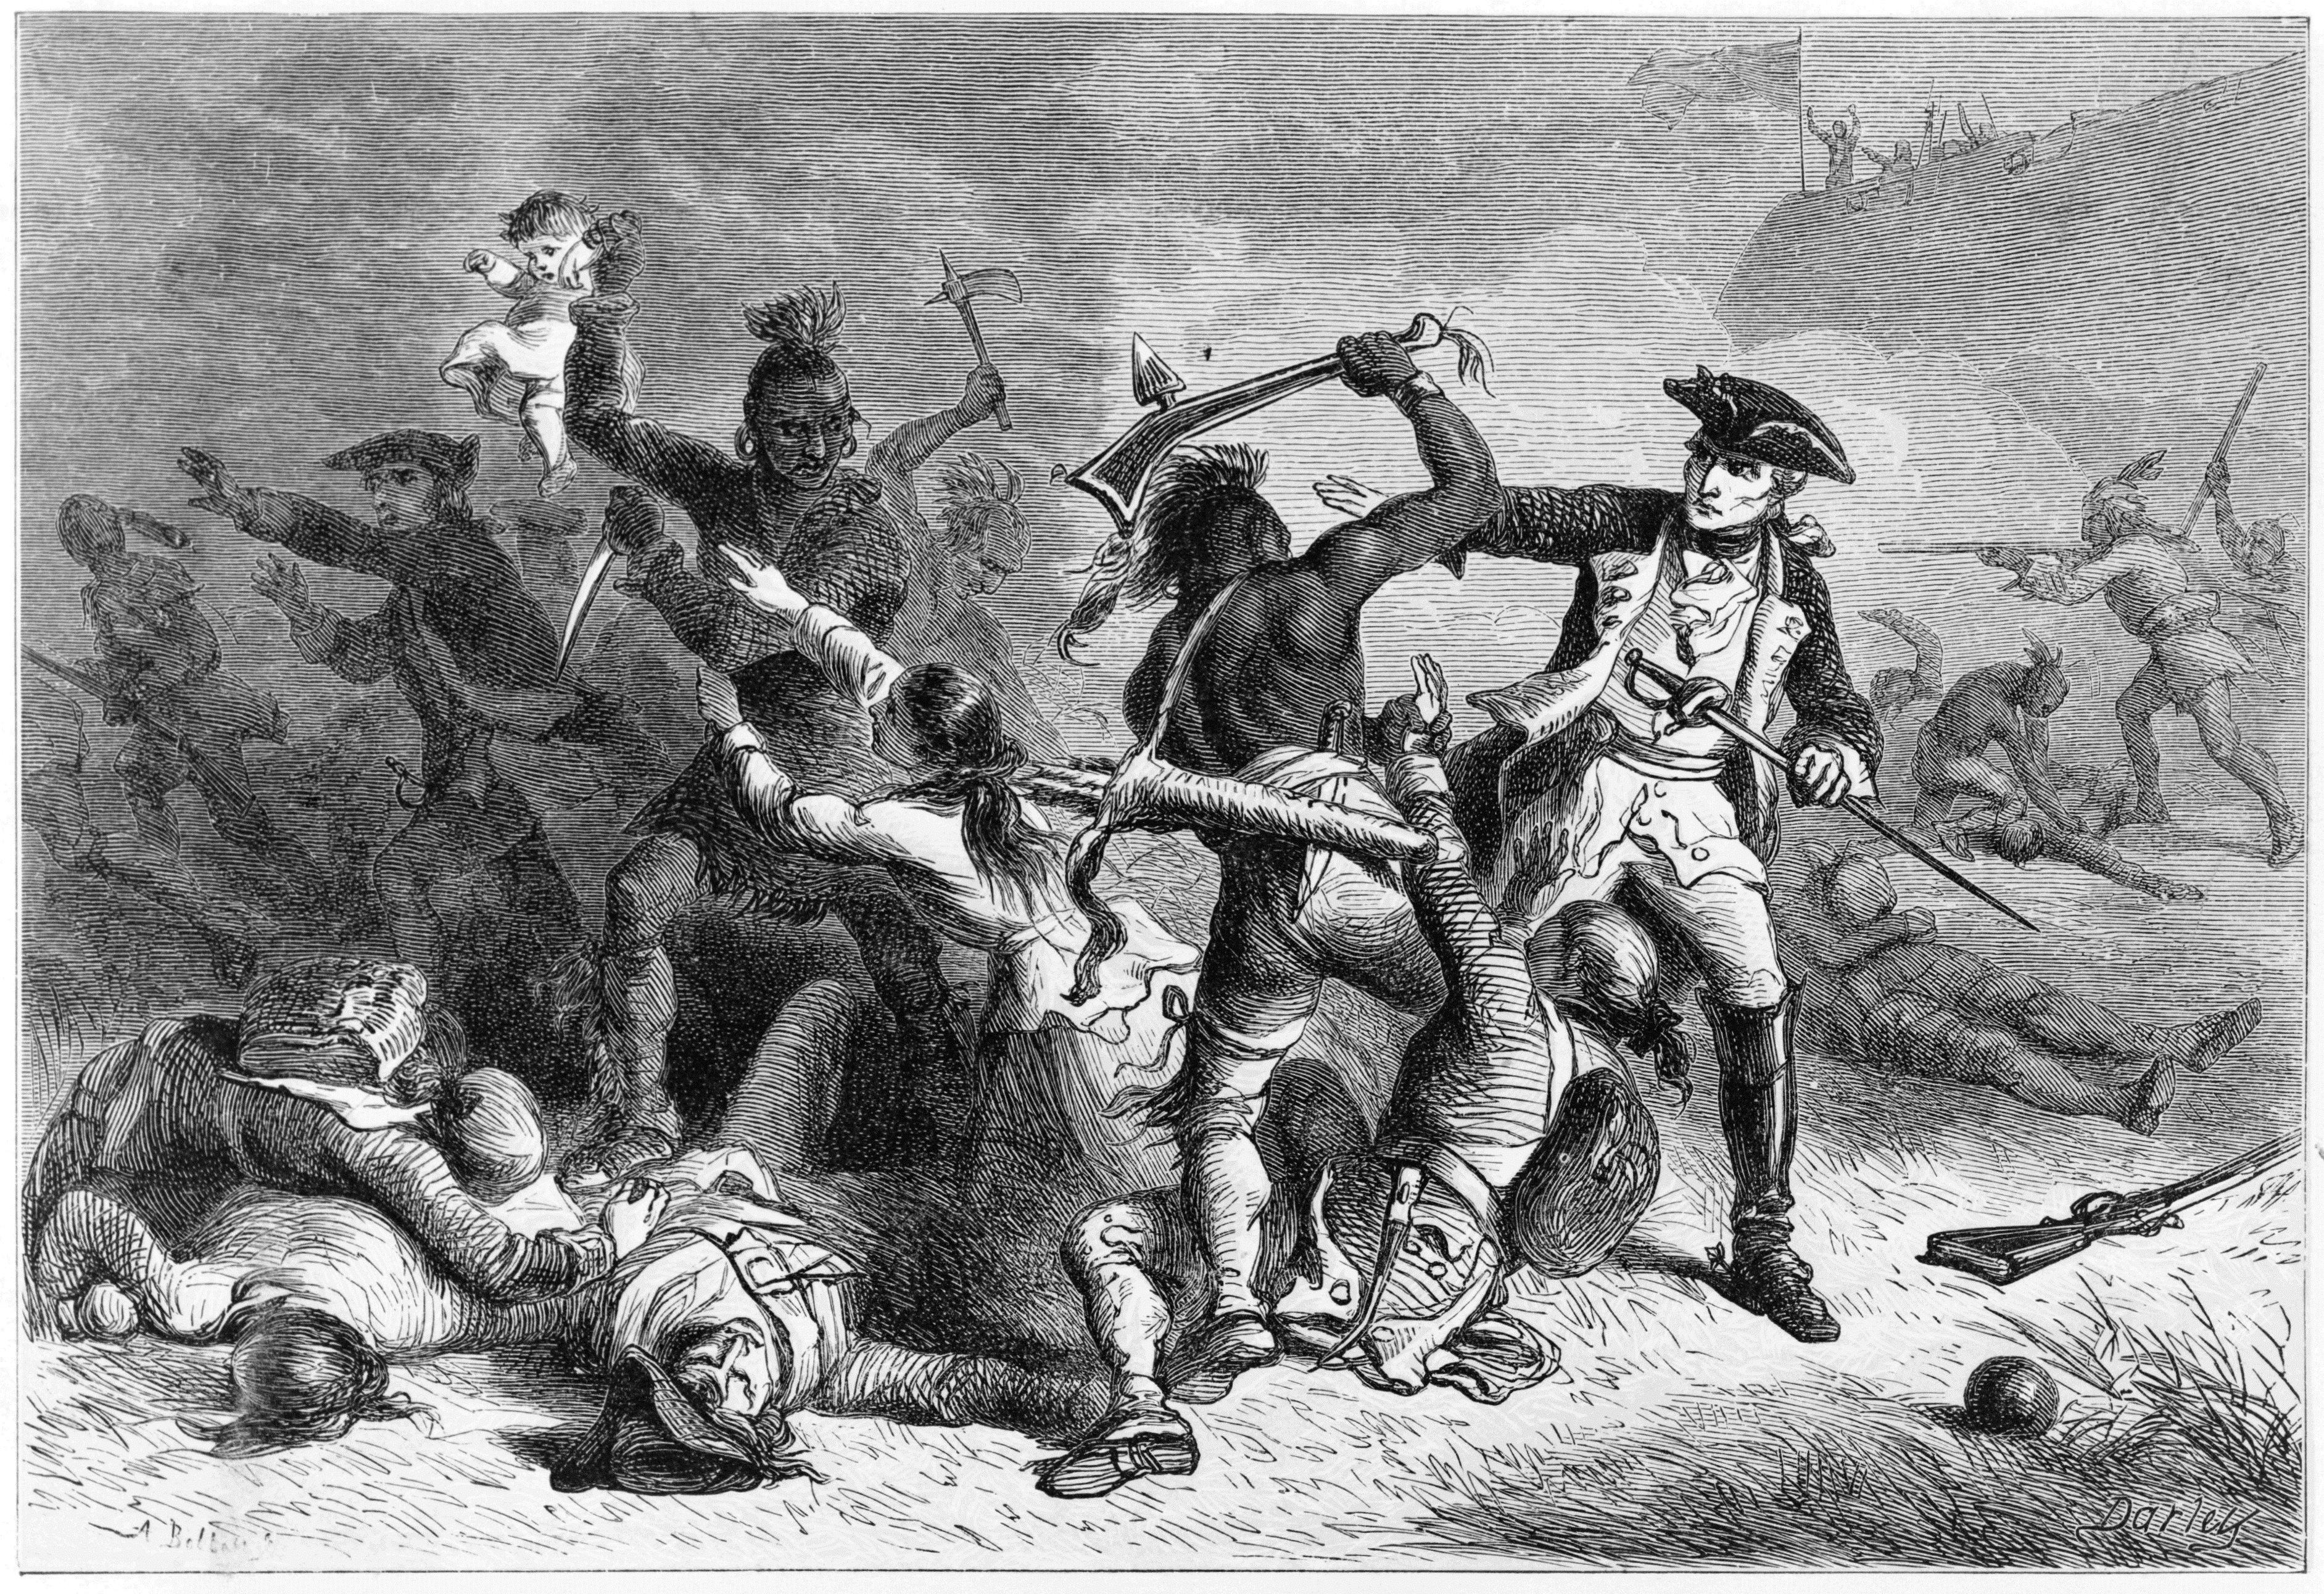 Le lieutenant-général français Montcalm essayant d’empêcher l’attaque des Hurons sur les soldats et civils après la reddition du fort de Fort William Henry en 1757. Gravure réalisée par Alfred Bobbett vers 1824. [DP]